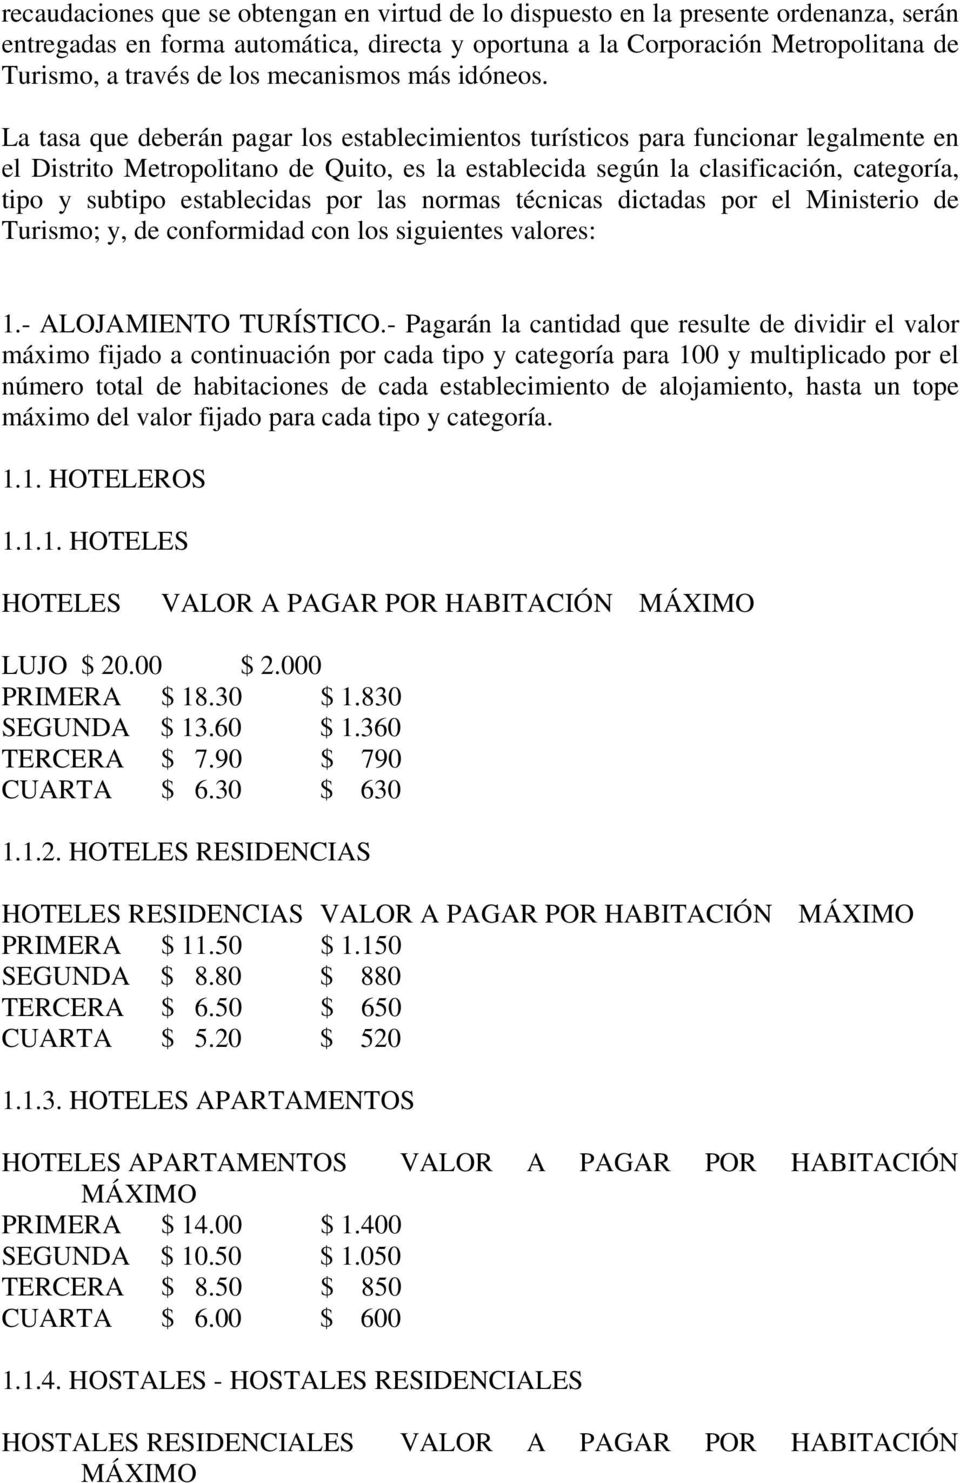 La tasa que deberán pagar los establecimientos turísticos para funcionar legalmente en el Distrito Metropolitano de Quito, es la establecida según la clasificación, categoría, tipo y subtipo